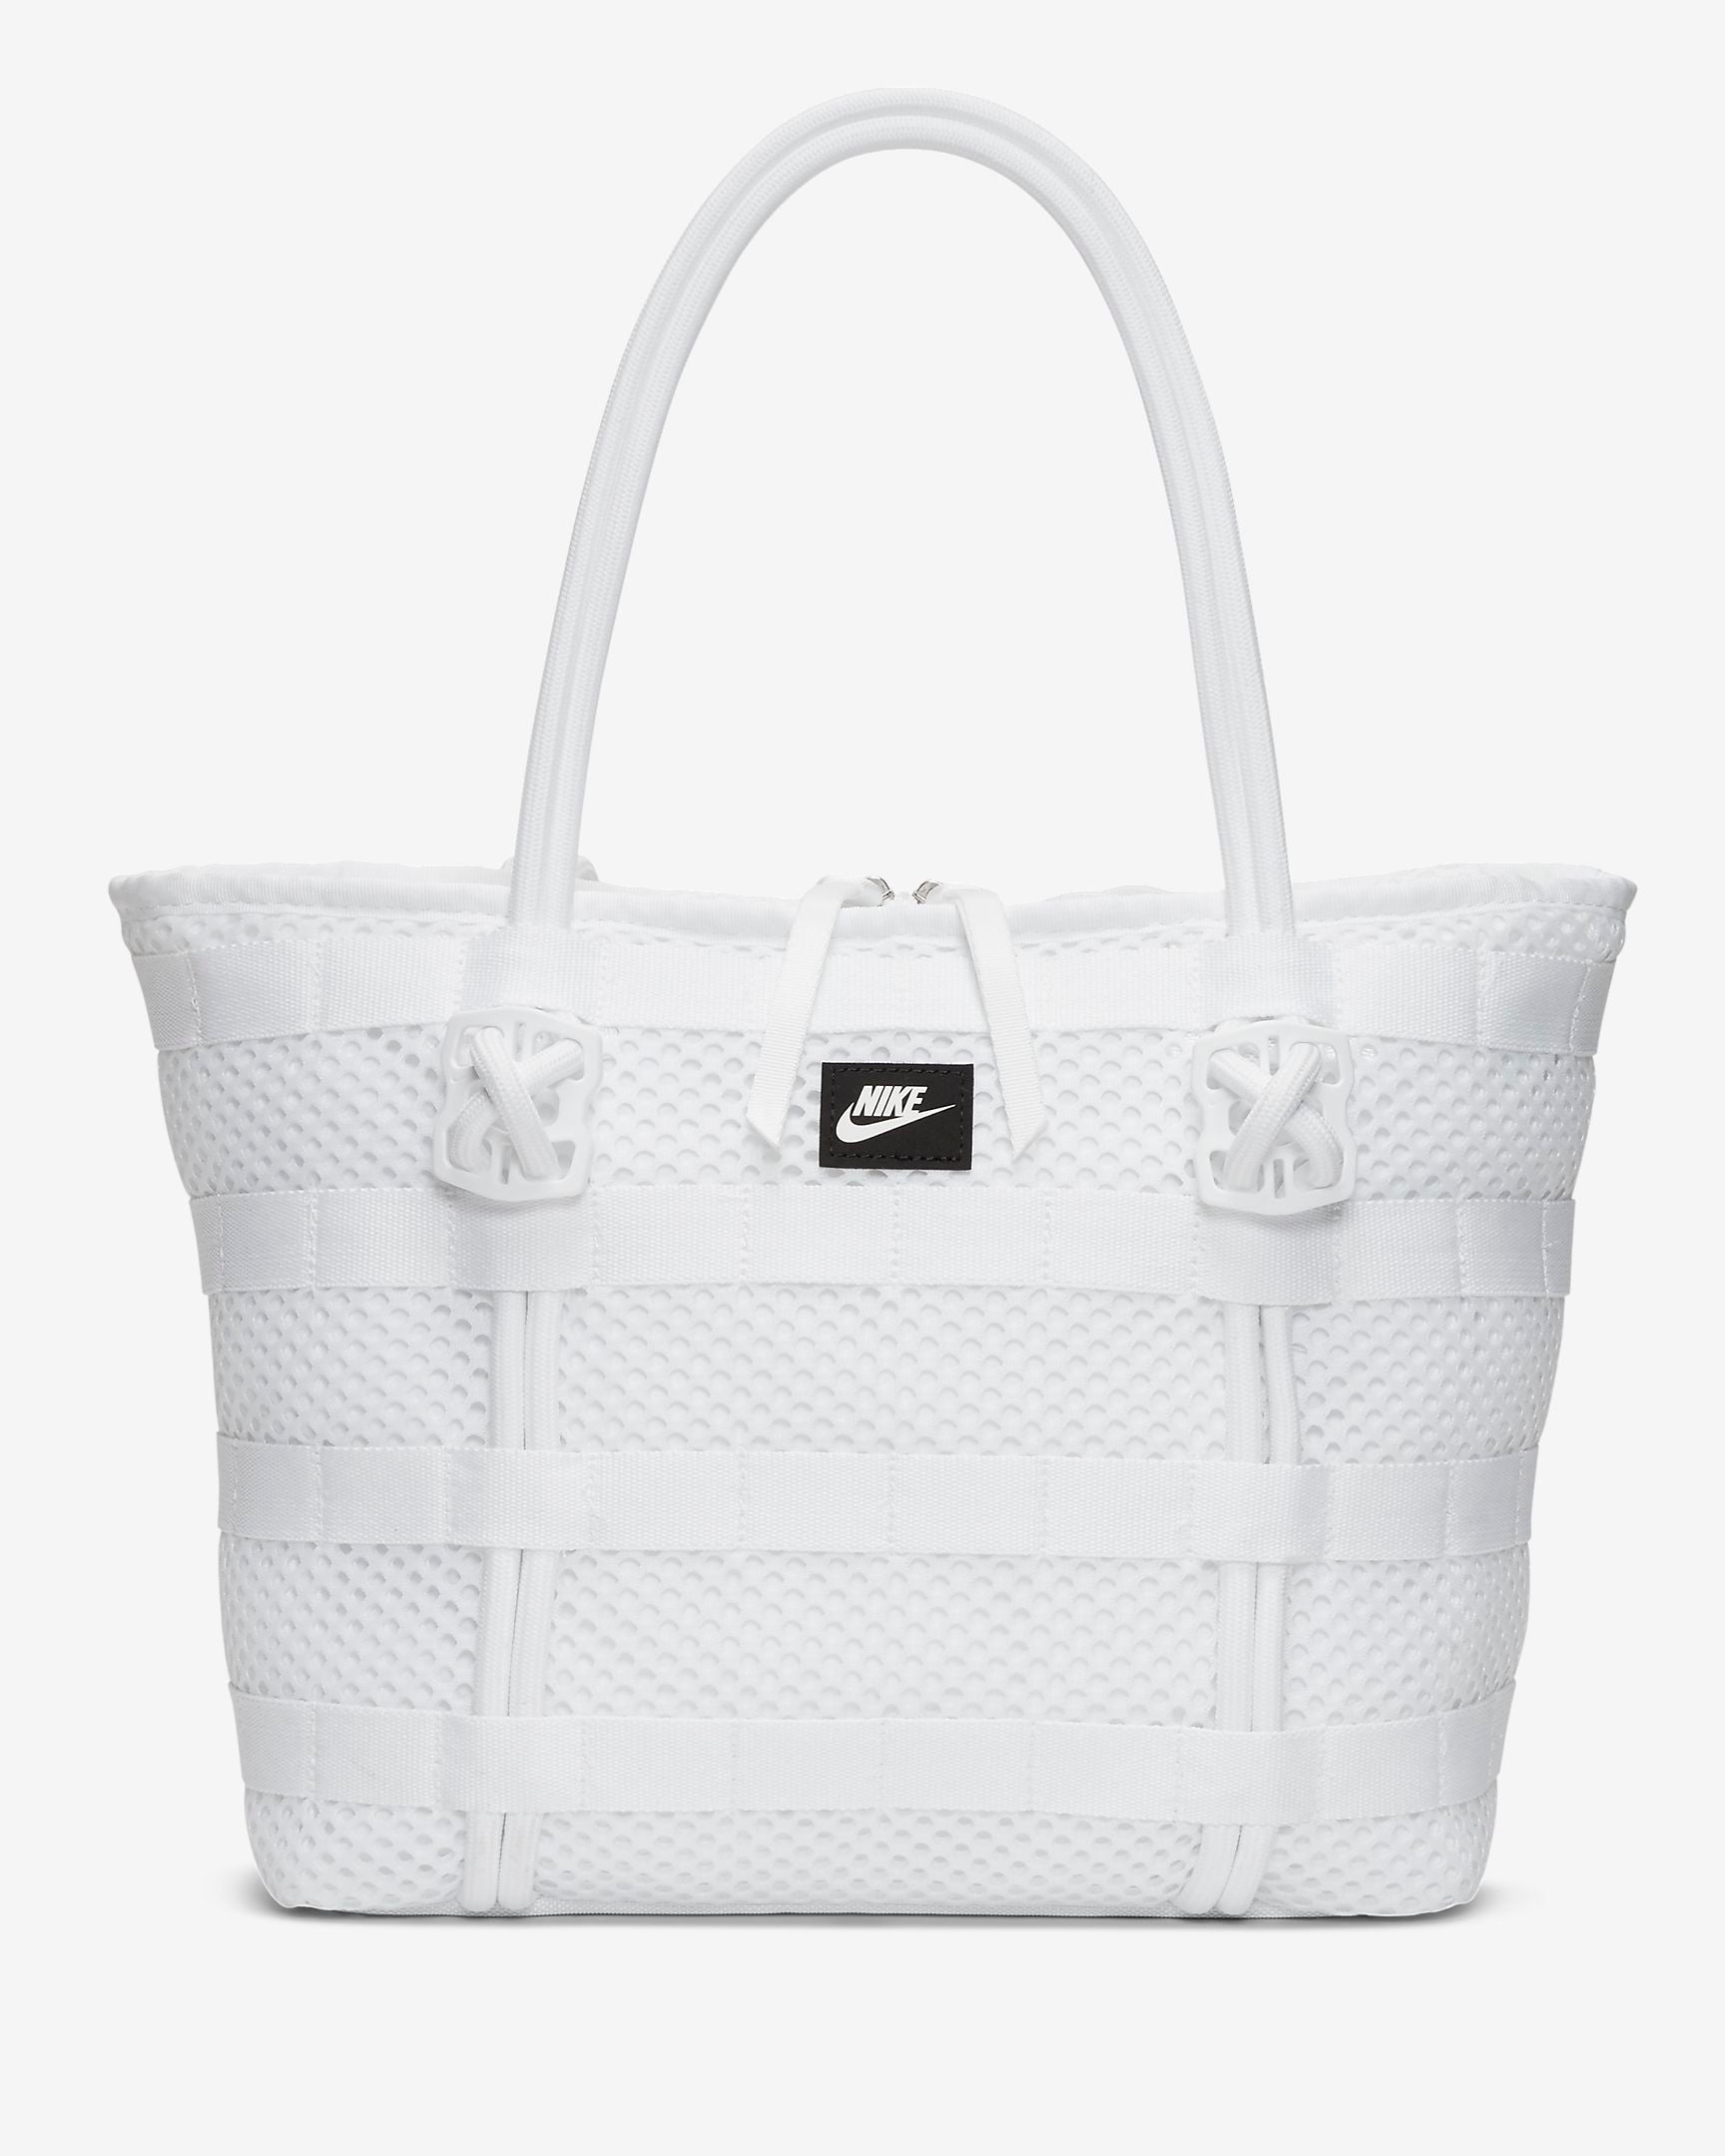 Nike + Air Tote Bag